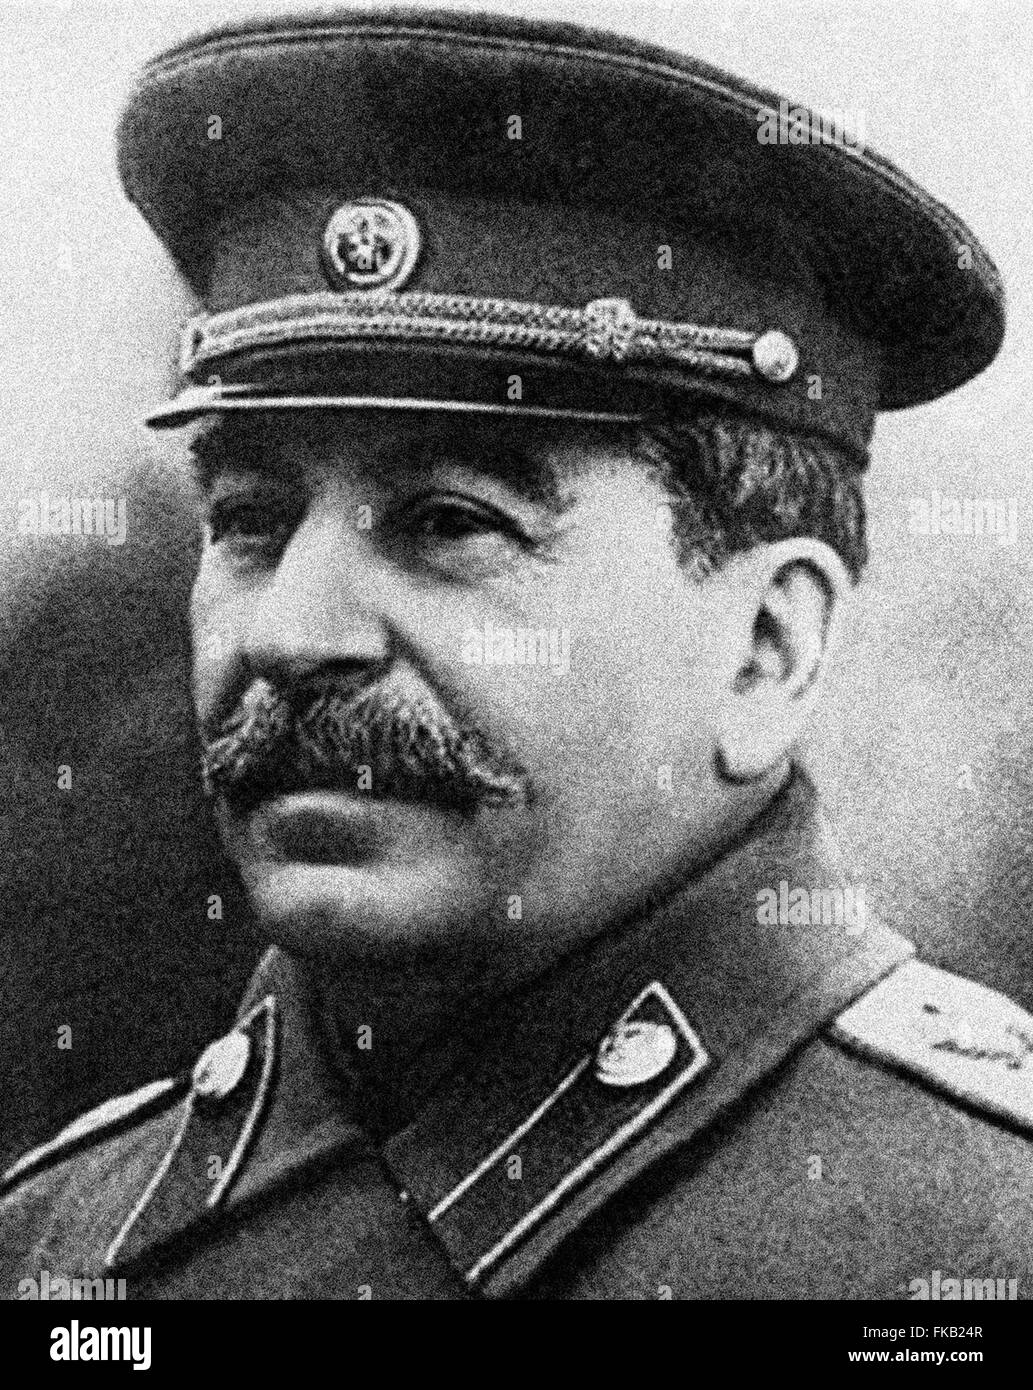 Joseph Vissarionovich Stalin era il Premier della Unione Sovietica a partire dal 6 maggio 1941 fino alla sua morte nel 5 marzo 1953. 1942 immagine da archivi di stampa Ritratto Service - Ex premere ritratto Bureau Foto Stock